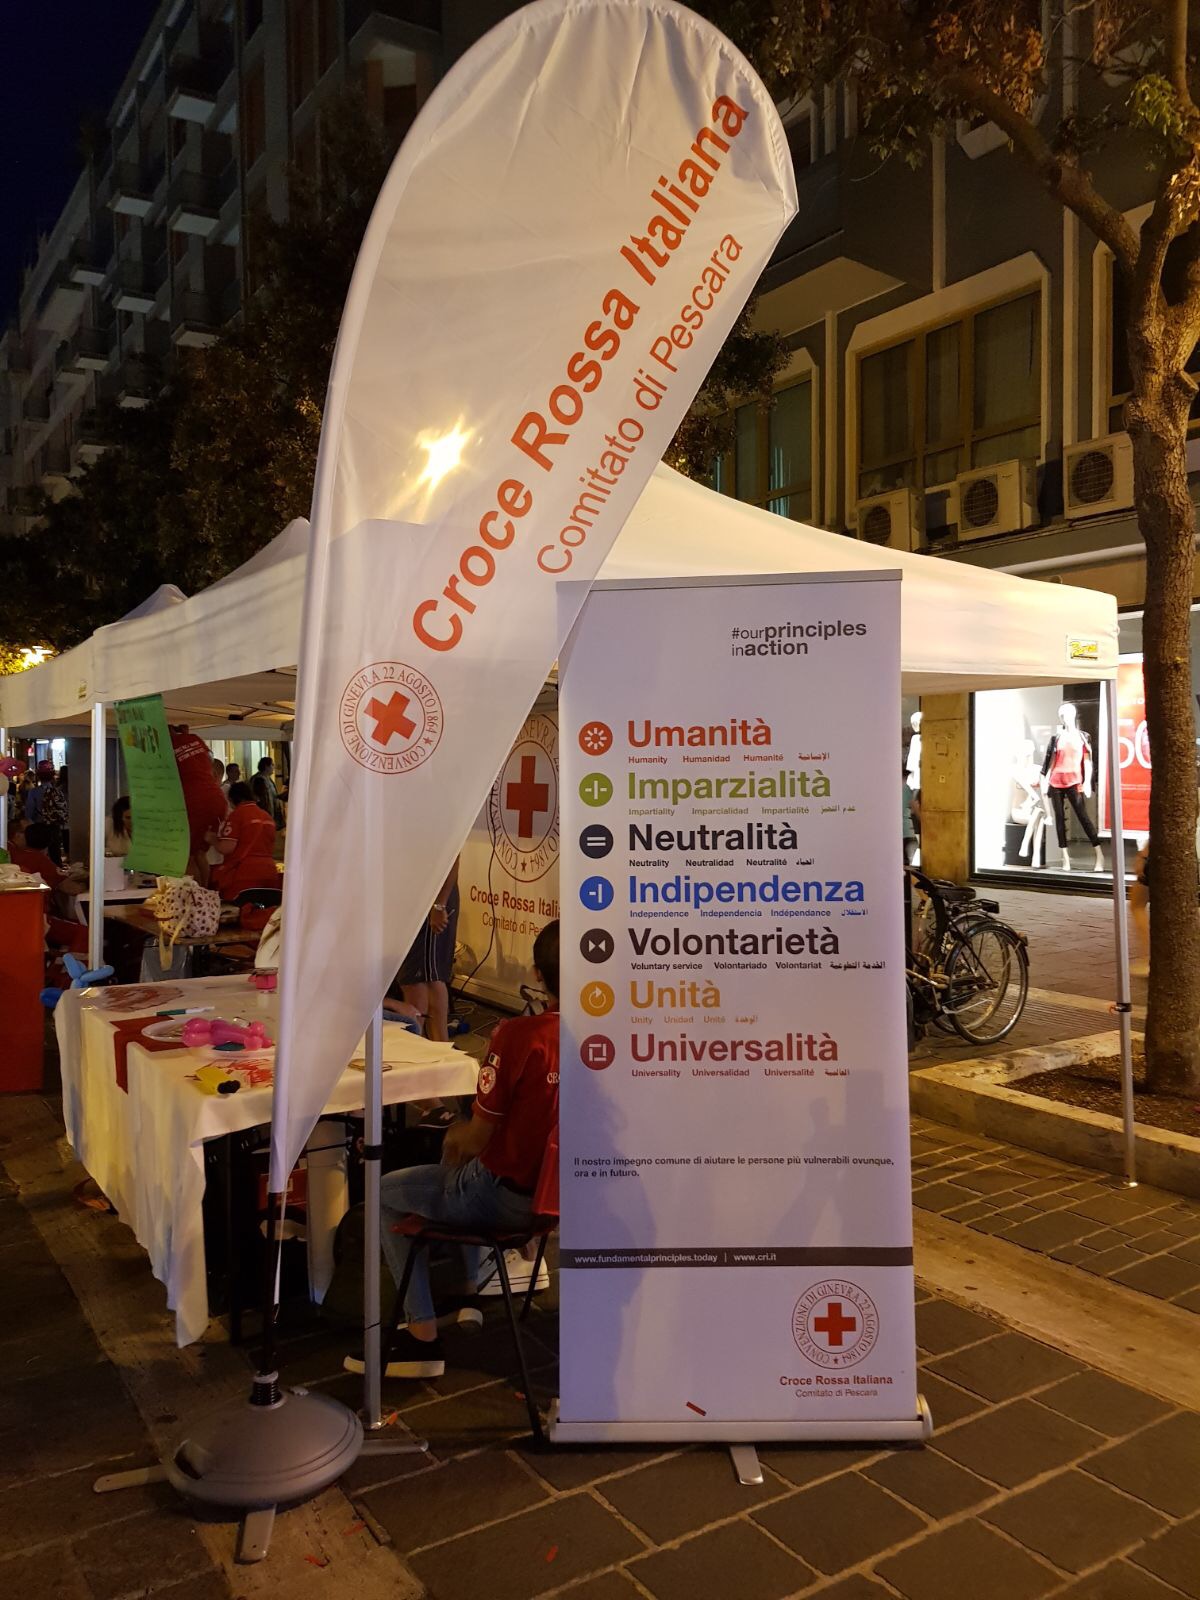  “É stato bello - sottolinea Fabio Nieddu, Presidente del Comitato della Croce Rossa di Pescara - condividere con tutti voi questo stupendo Servizio per la cittadinanza di Pescara!"